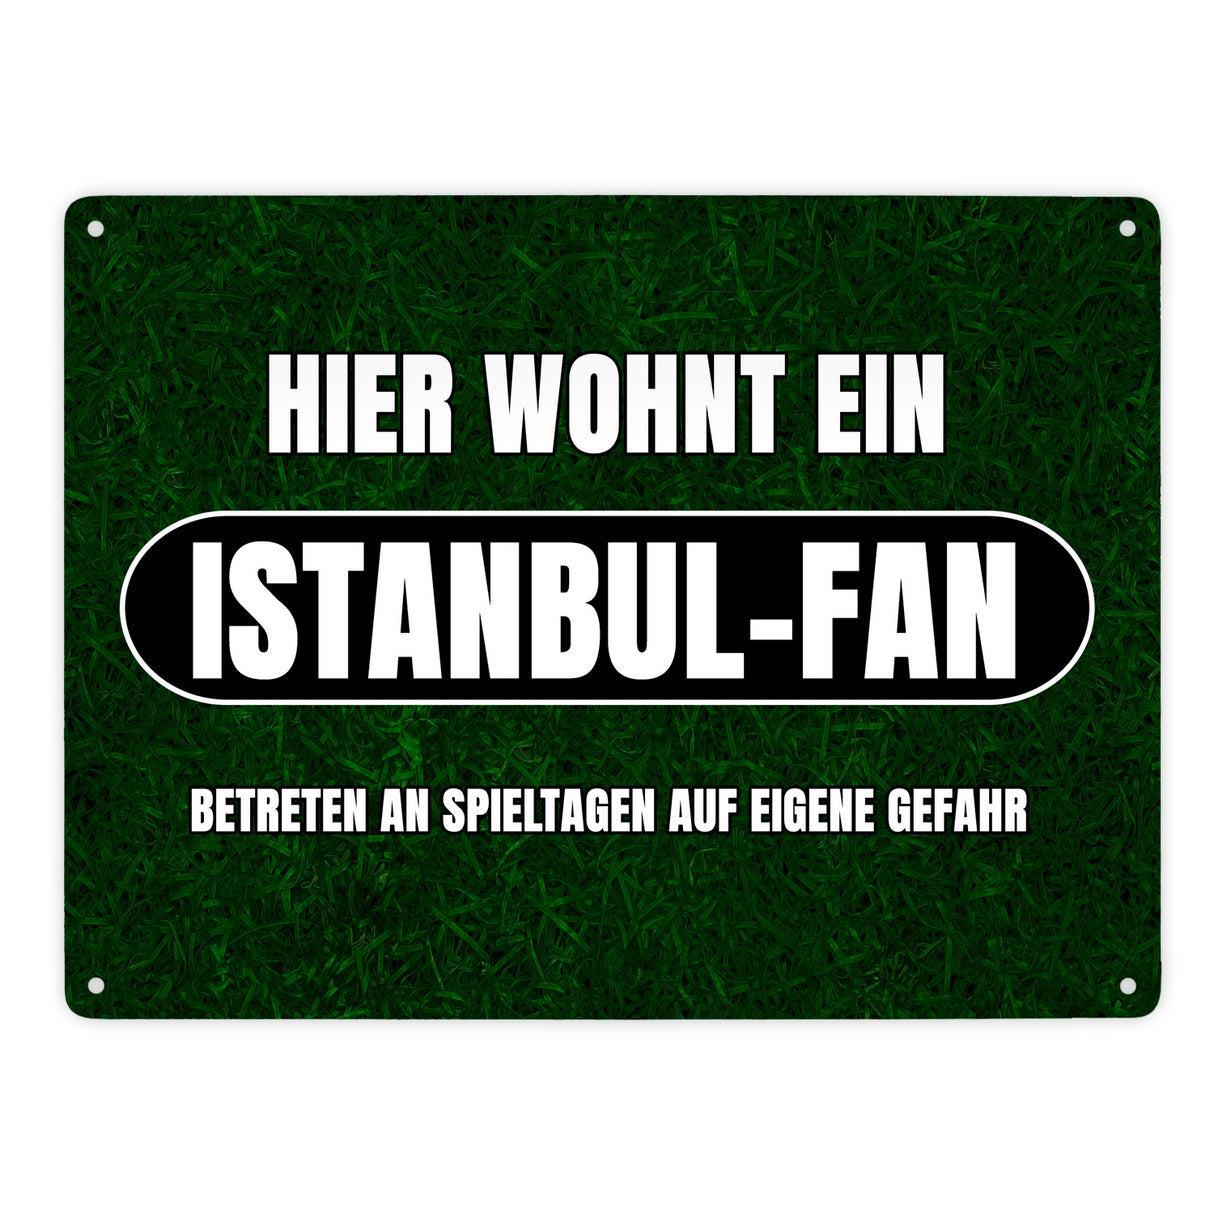 Hier wohnt ein Istanbul-Fan Metallschild in 15x20 cm mit Rasenmotiv